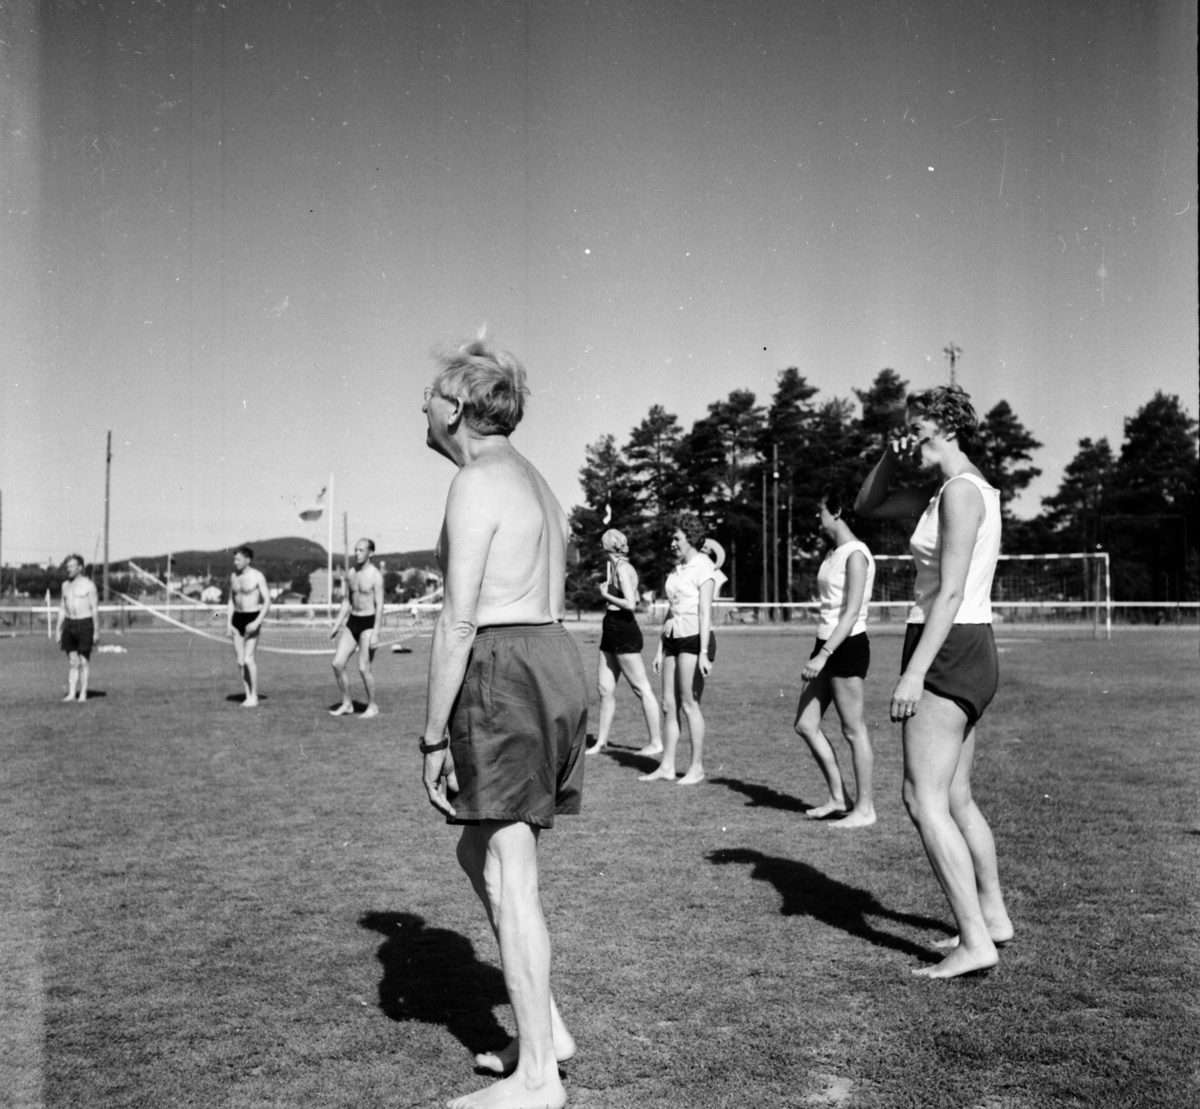 Rikslägret, Frisksport
1959